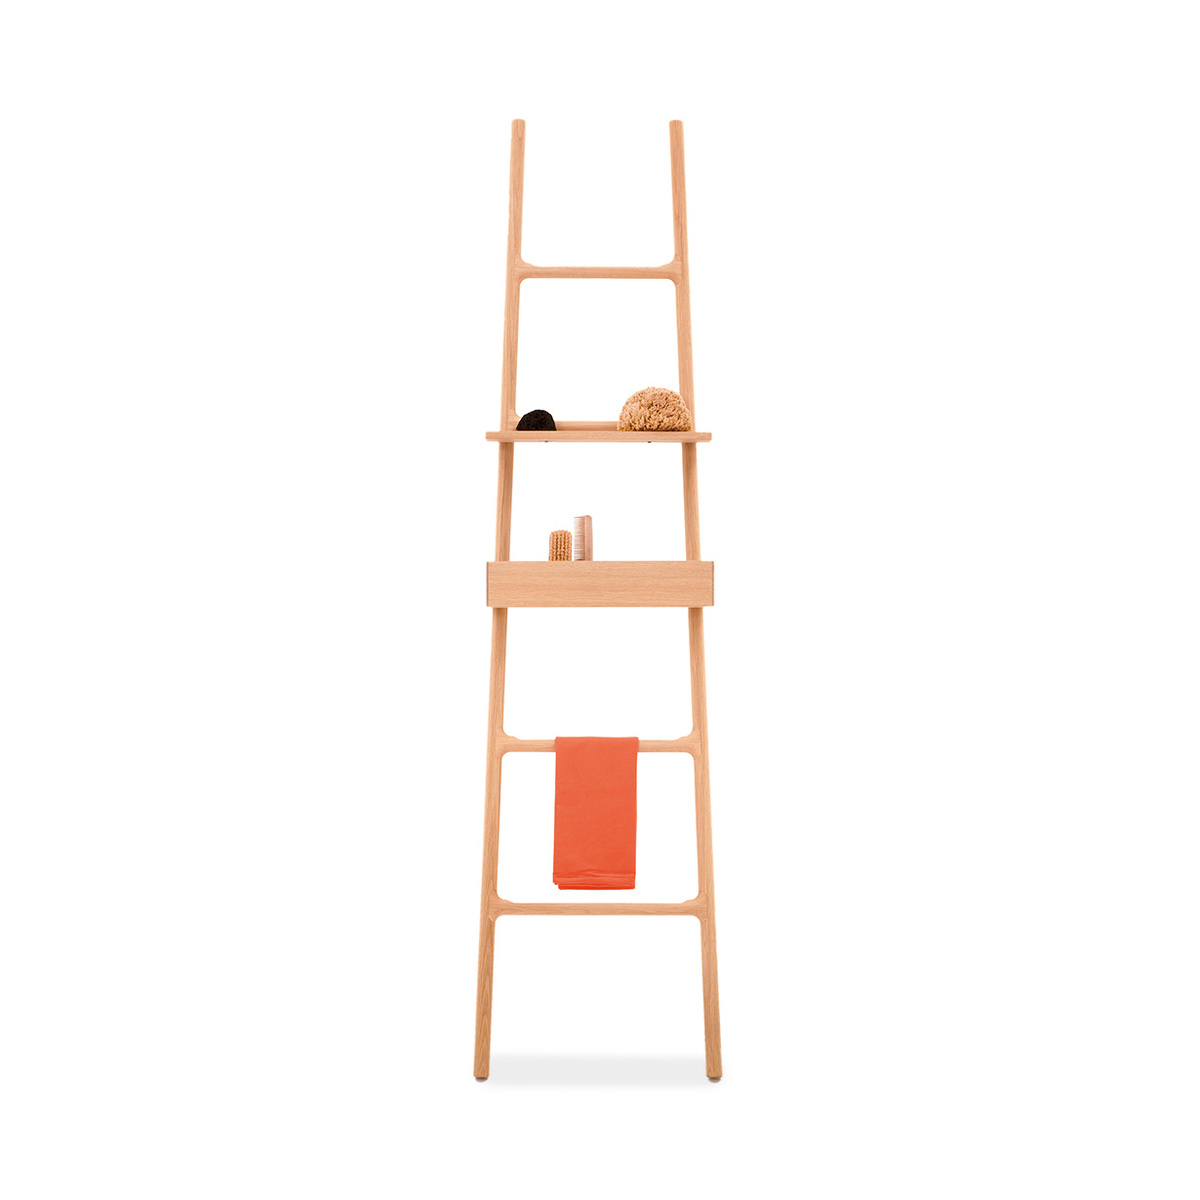 Tilt towel ladder by Discipline